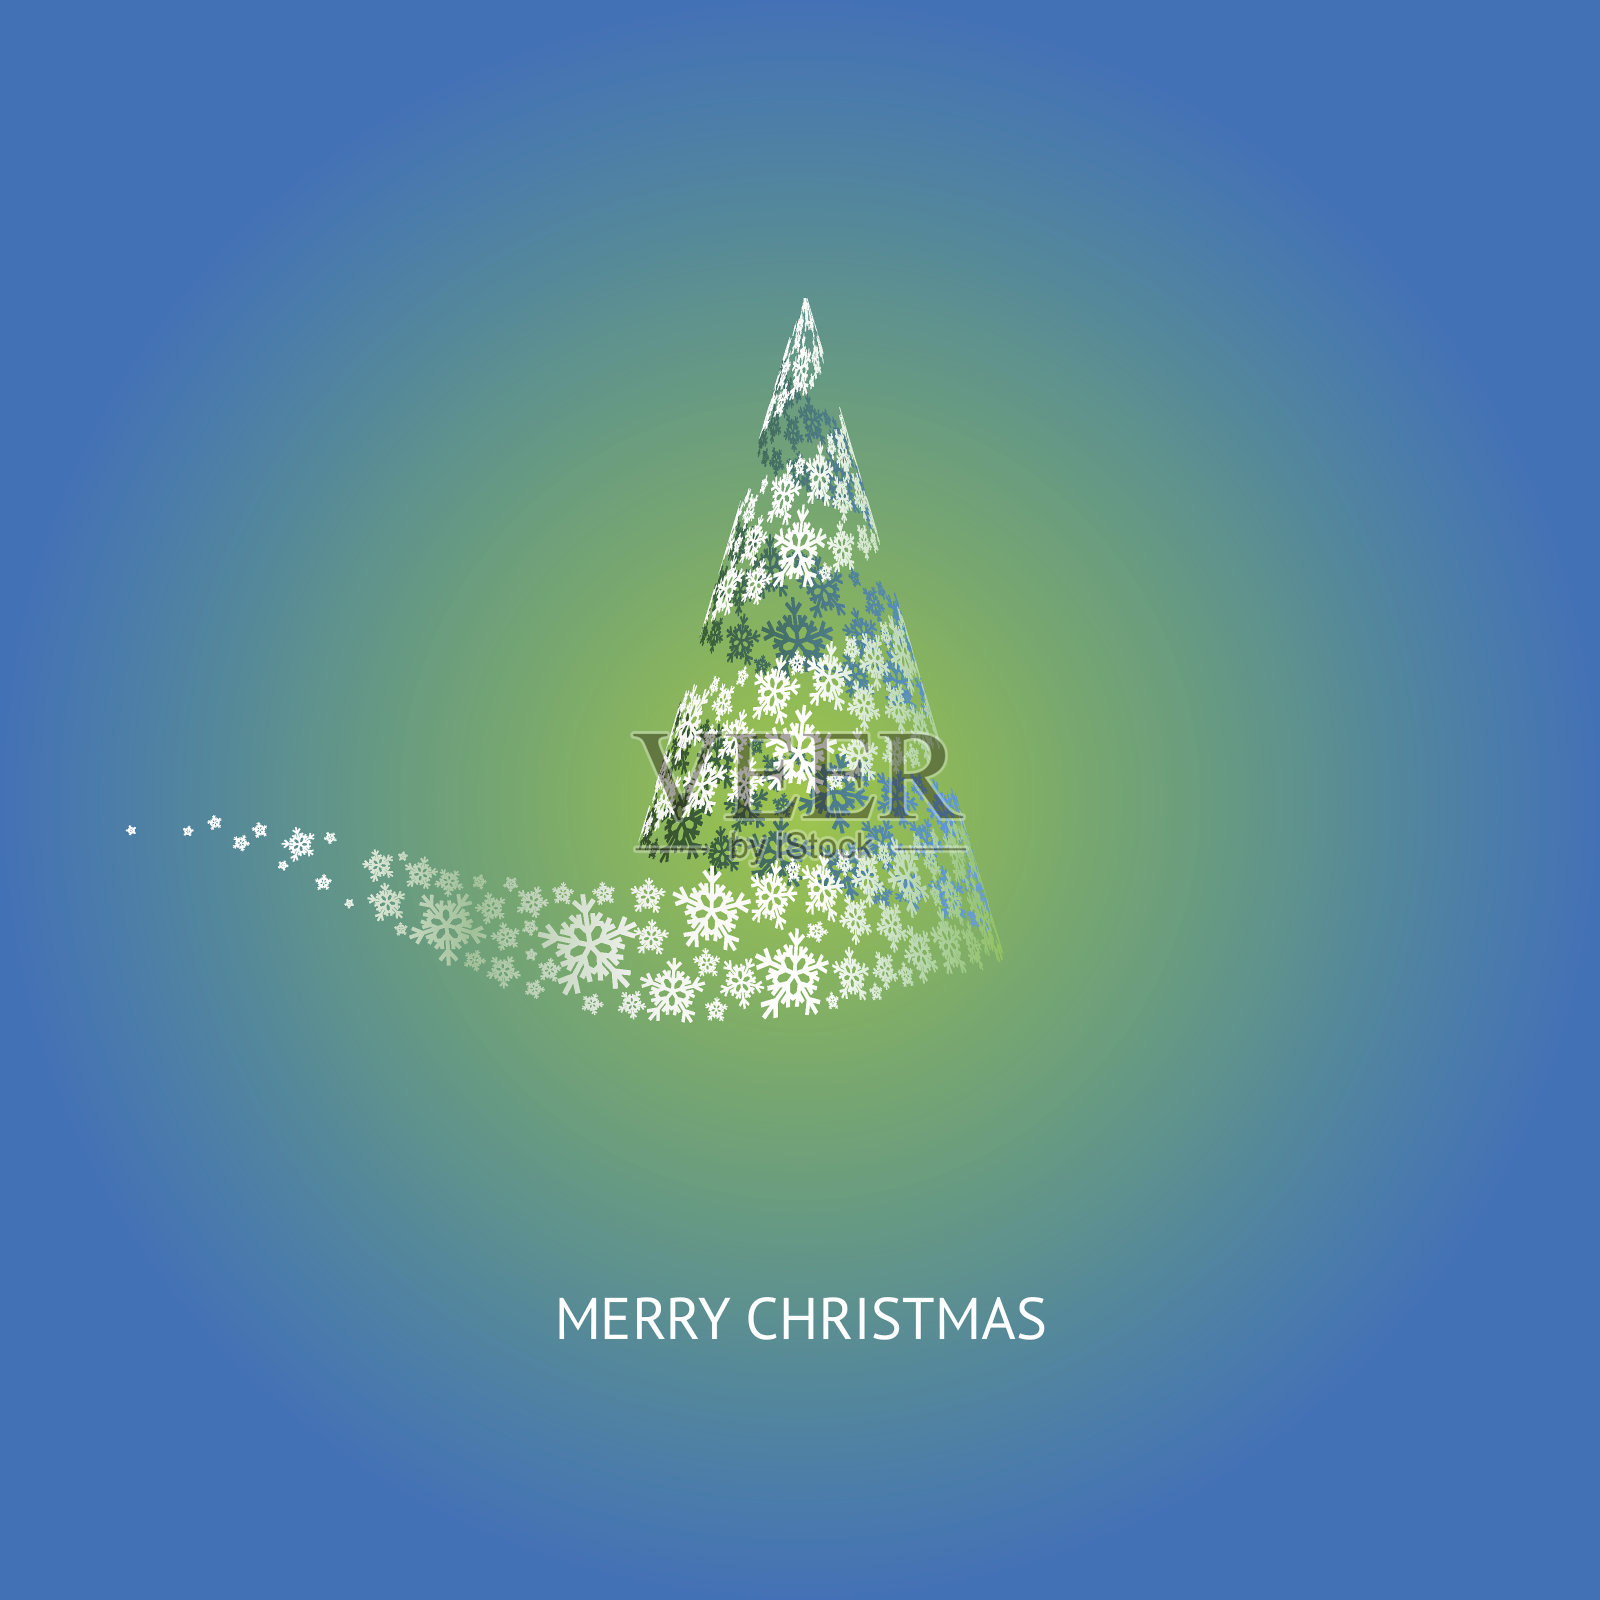 向量的圣诞树插画图片素材